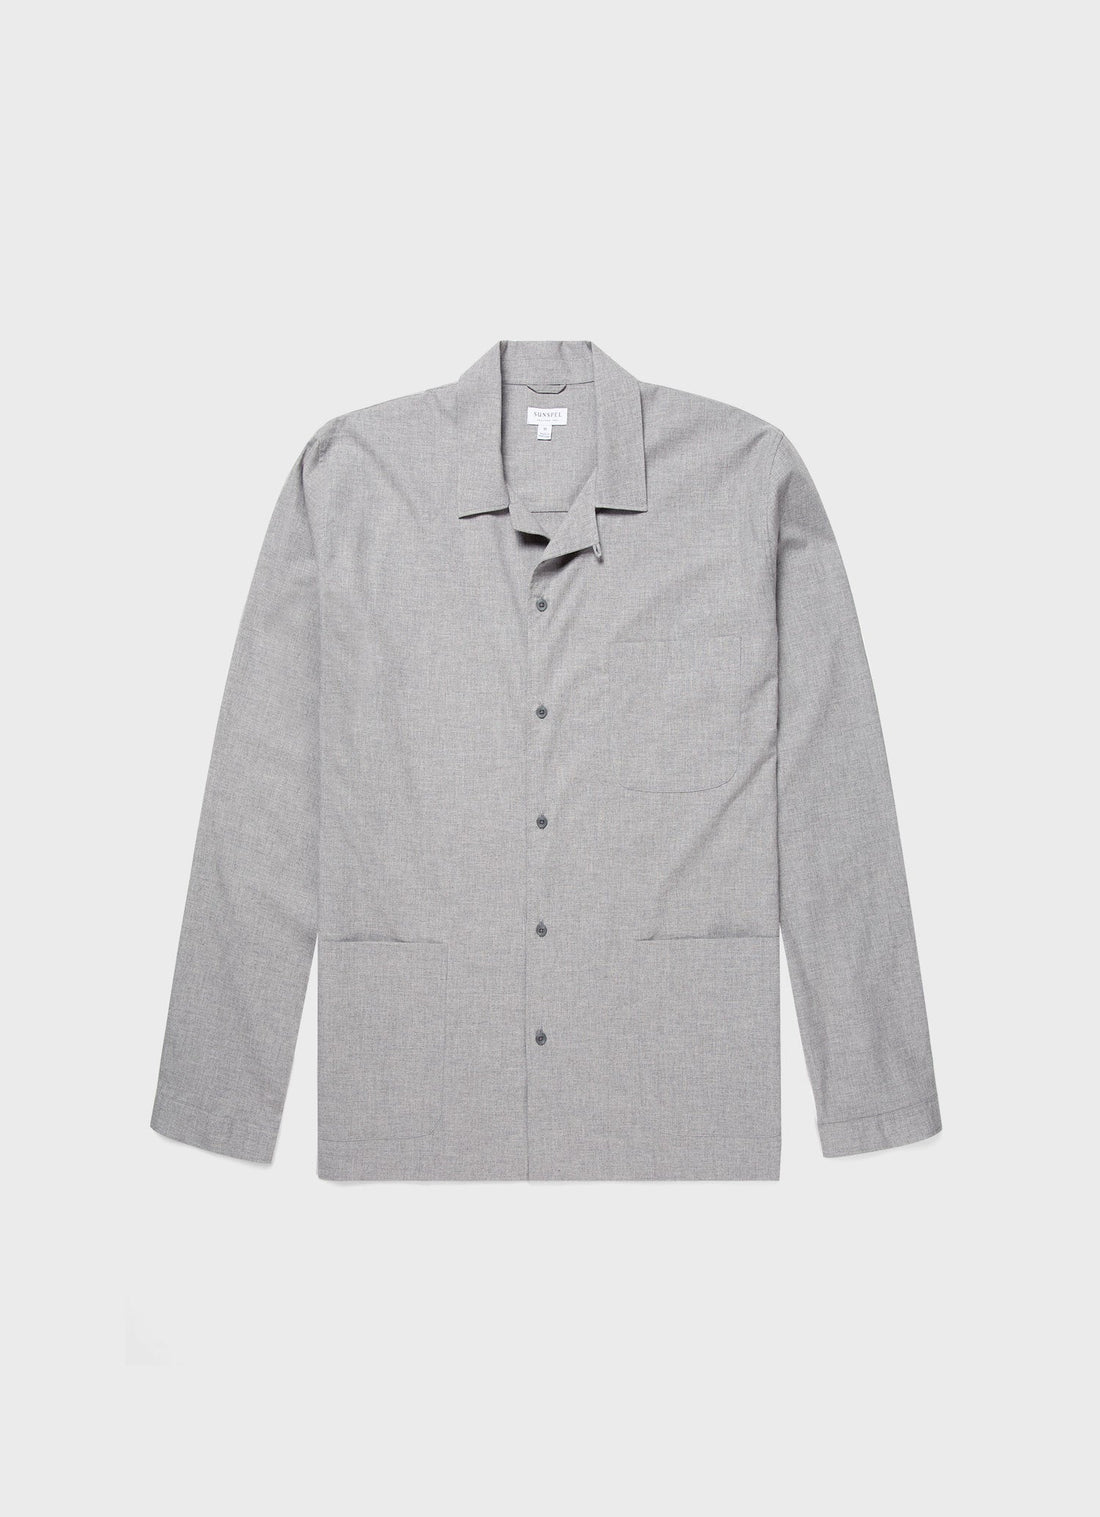 Men's Cotton Flannel Pyjama Shirt in Mid Grey Melange